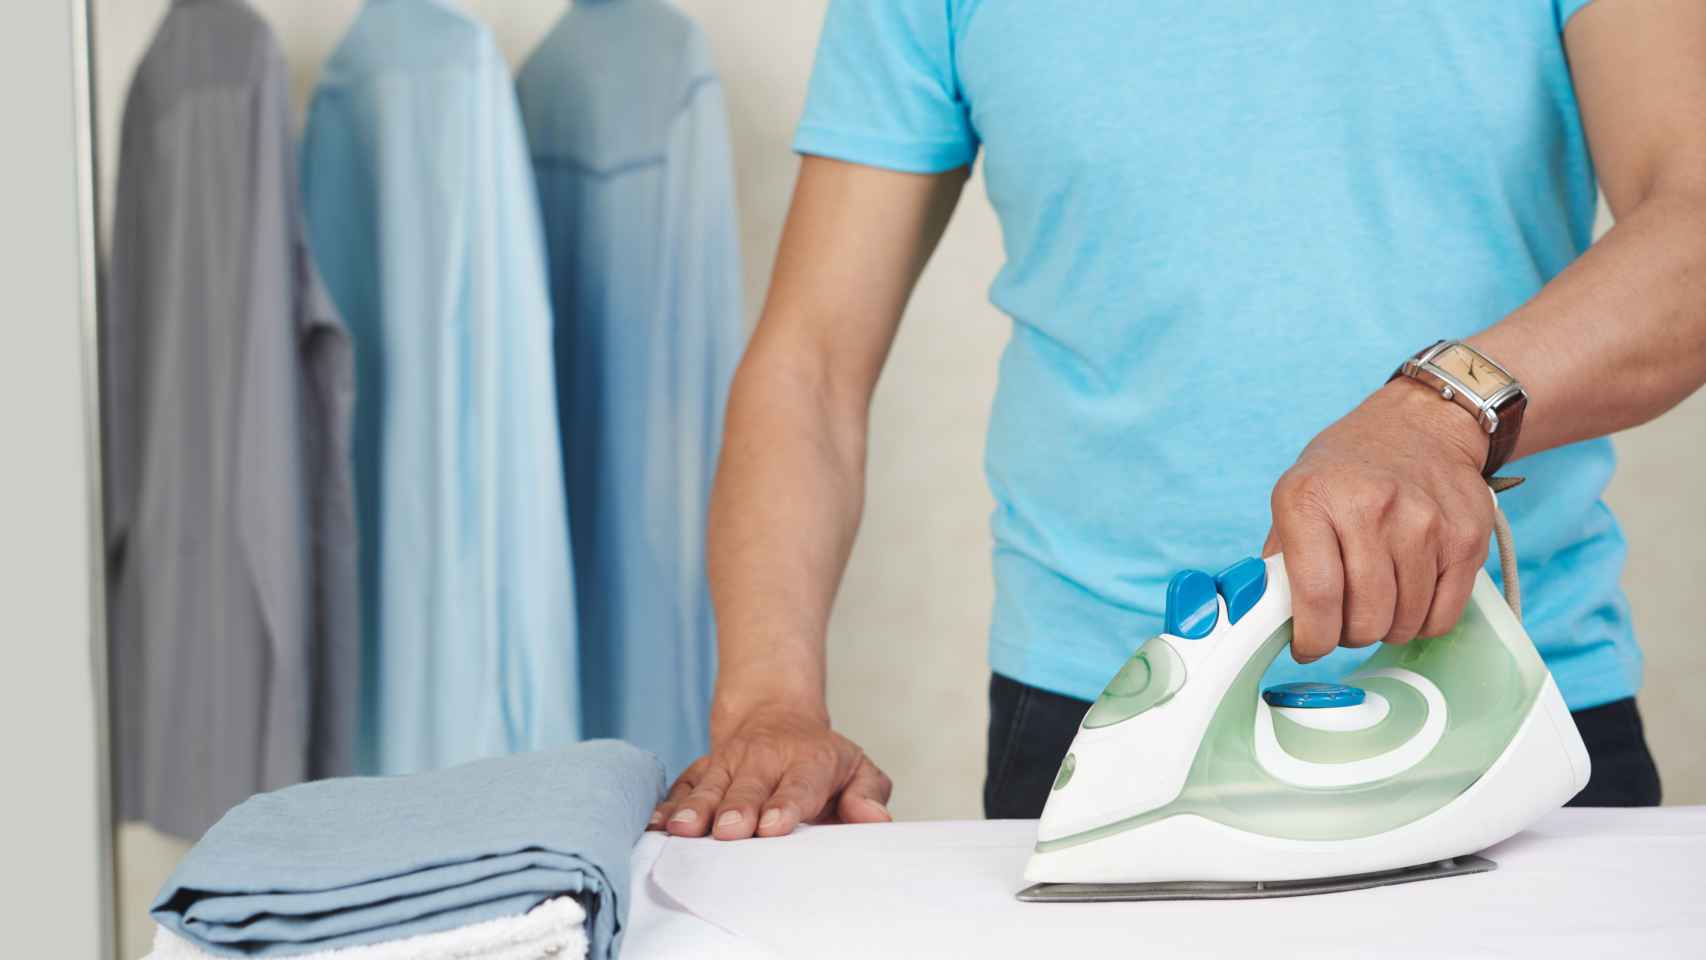 Cómo limpiar la plancha de la ropa de forma fácil